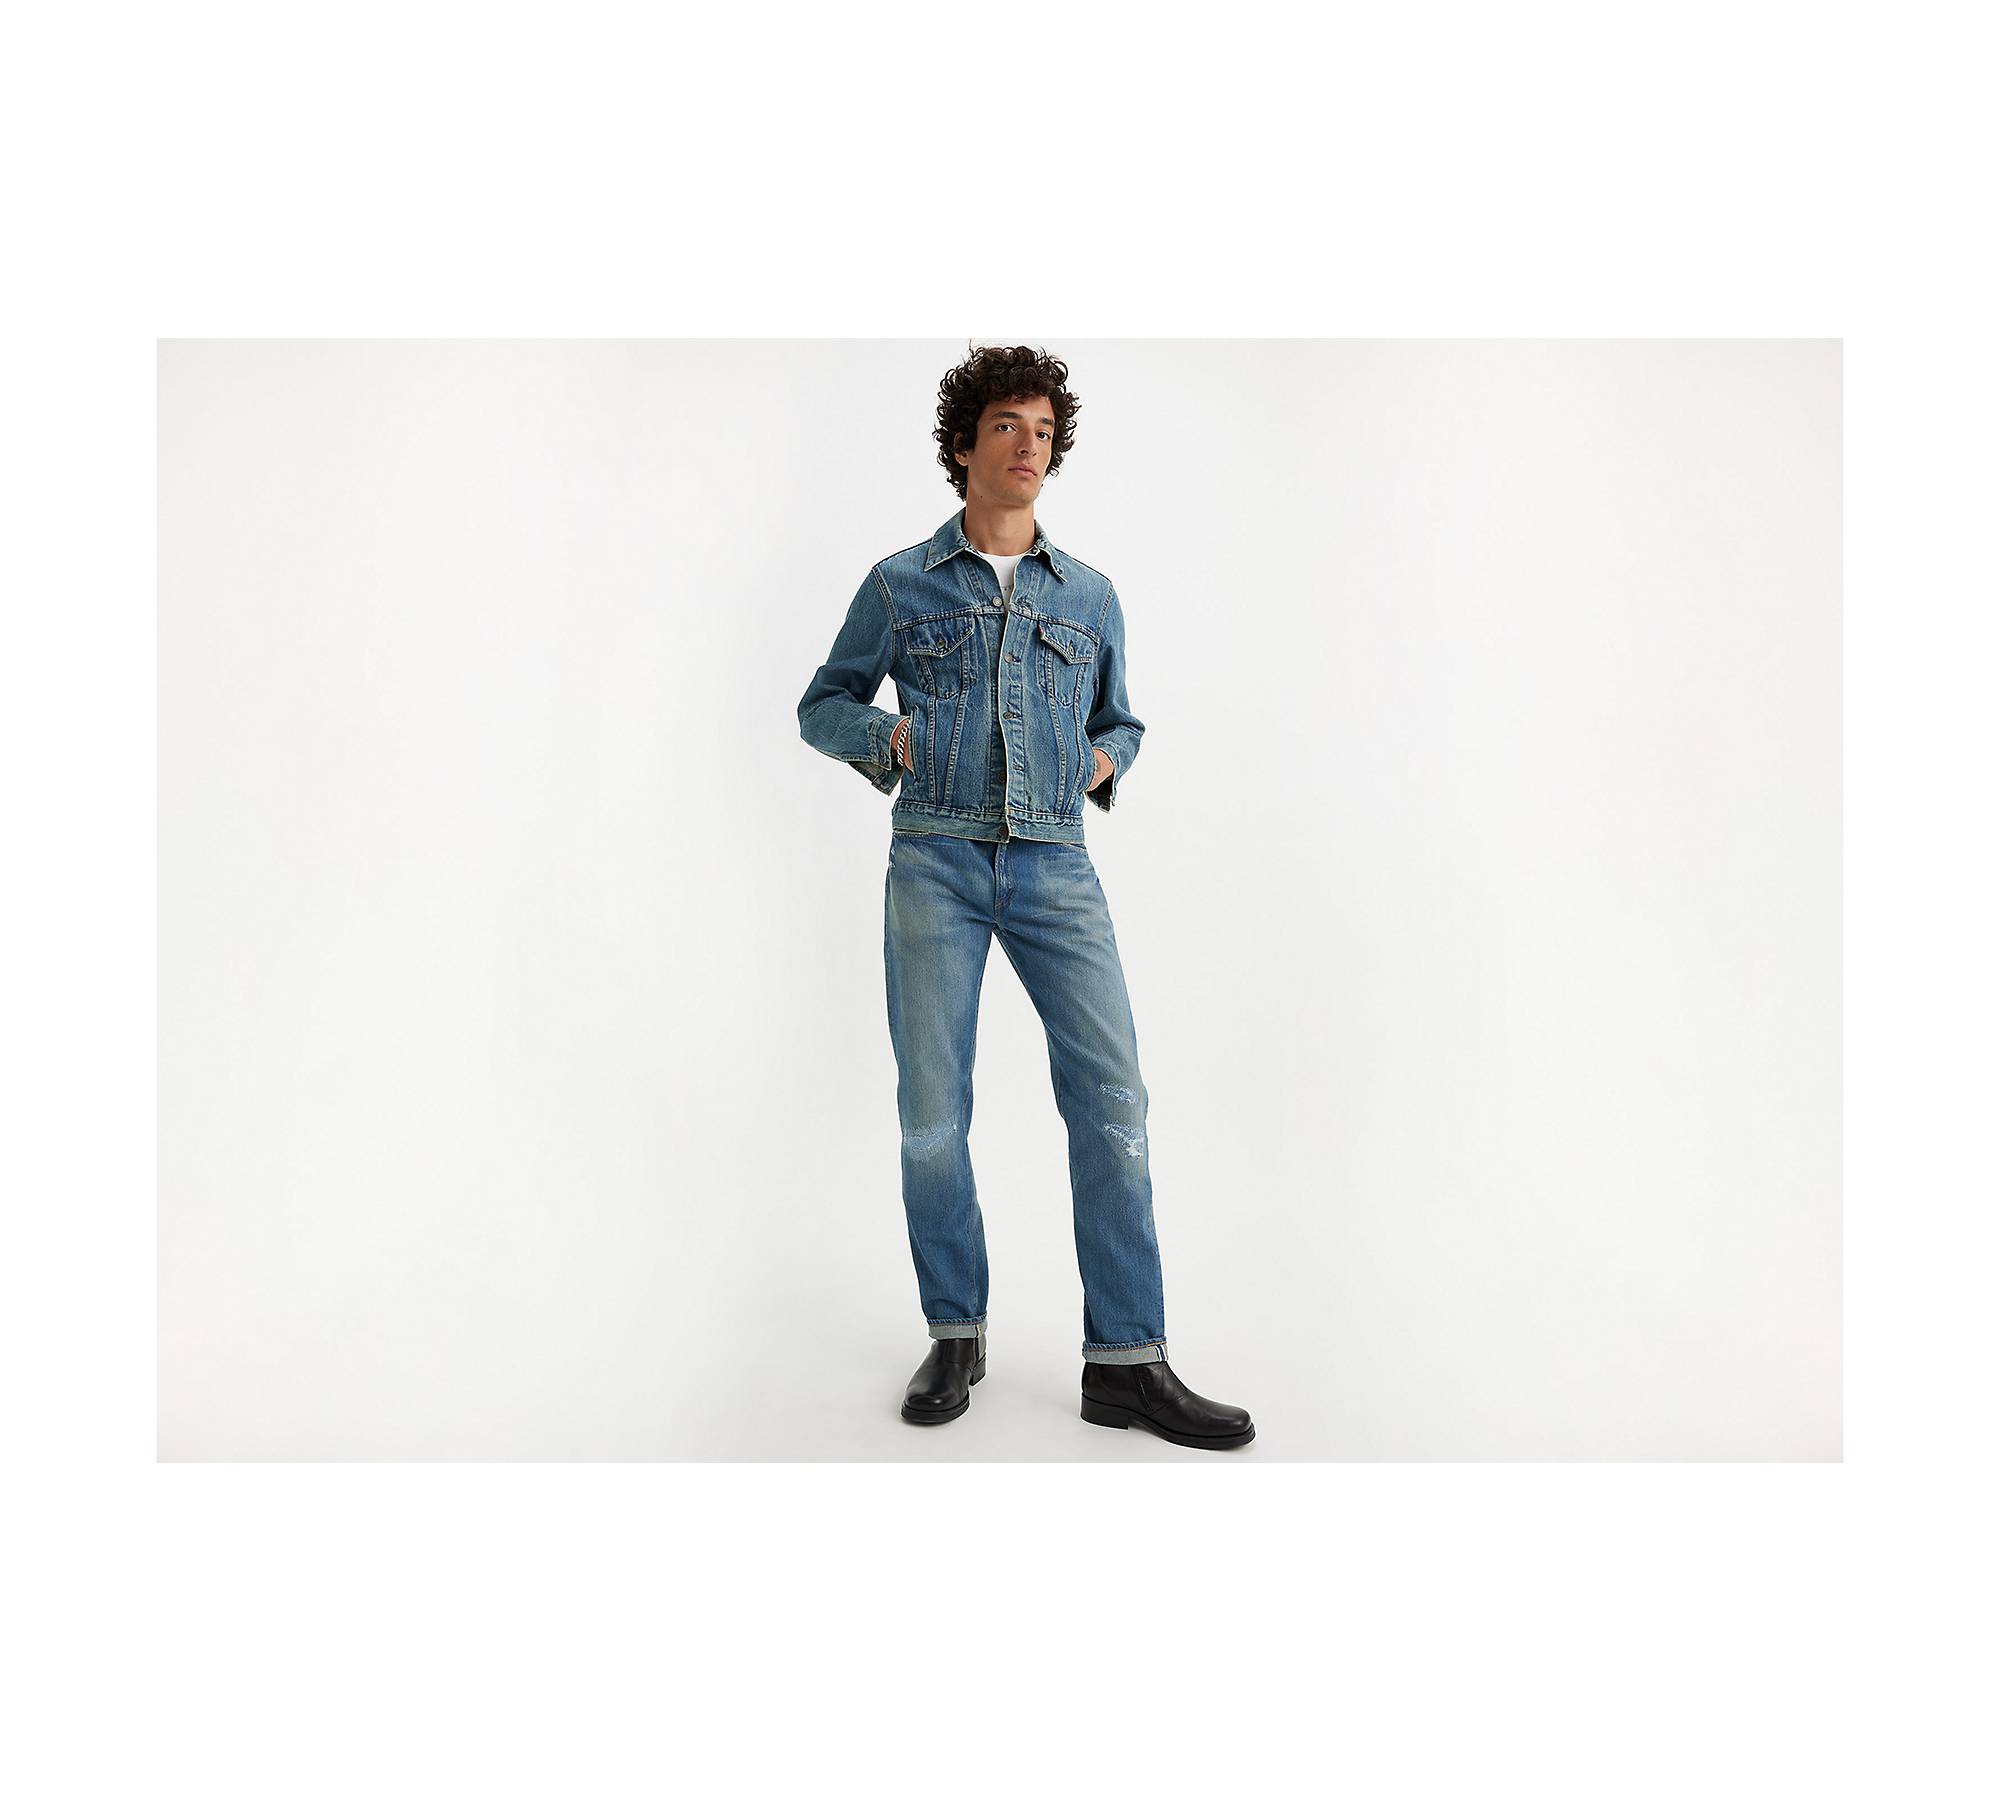 1954 501® Original Fit Selvedge Men's Jeans - Medium Wash